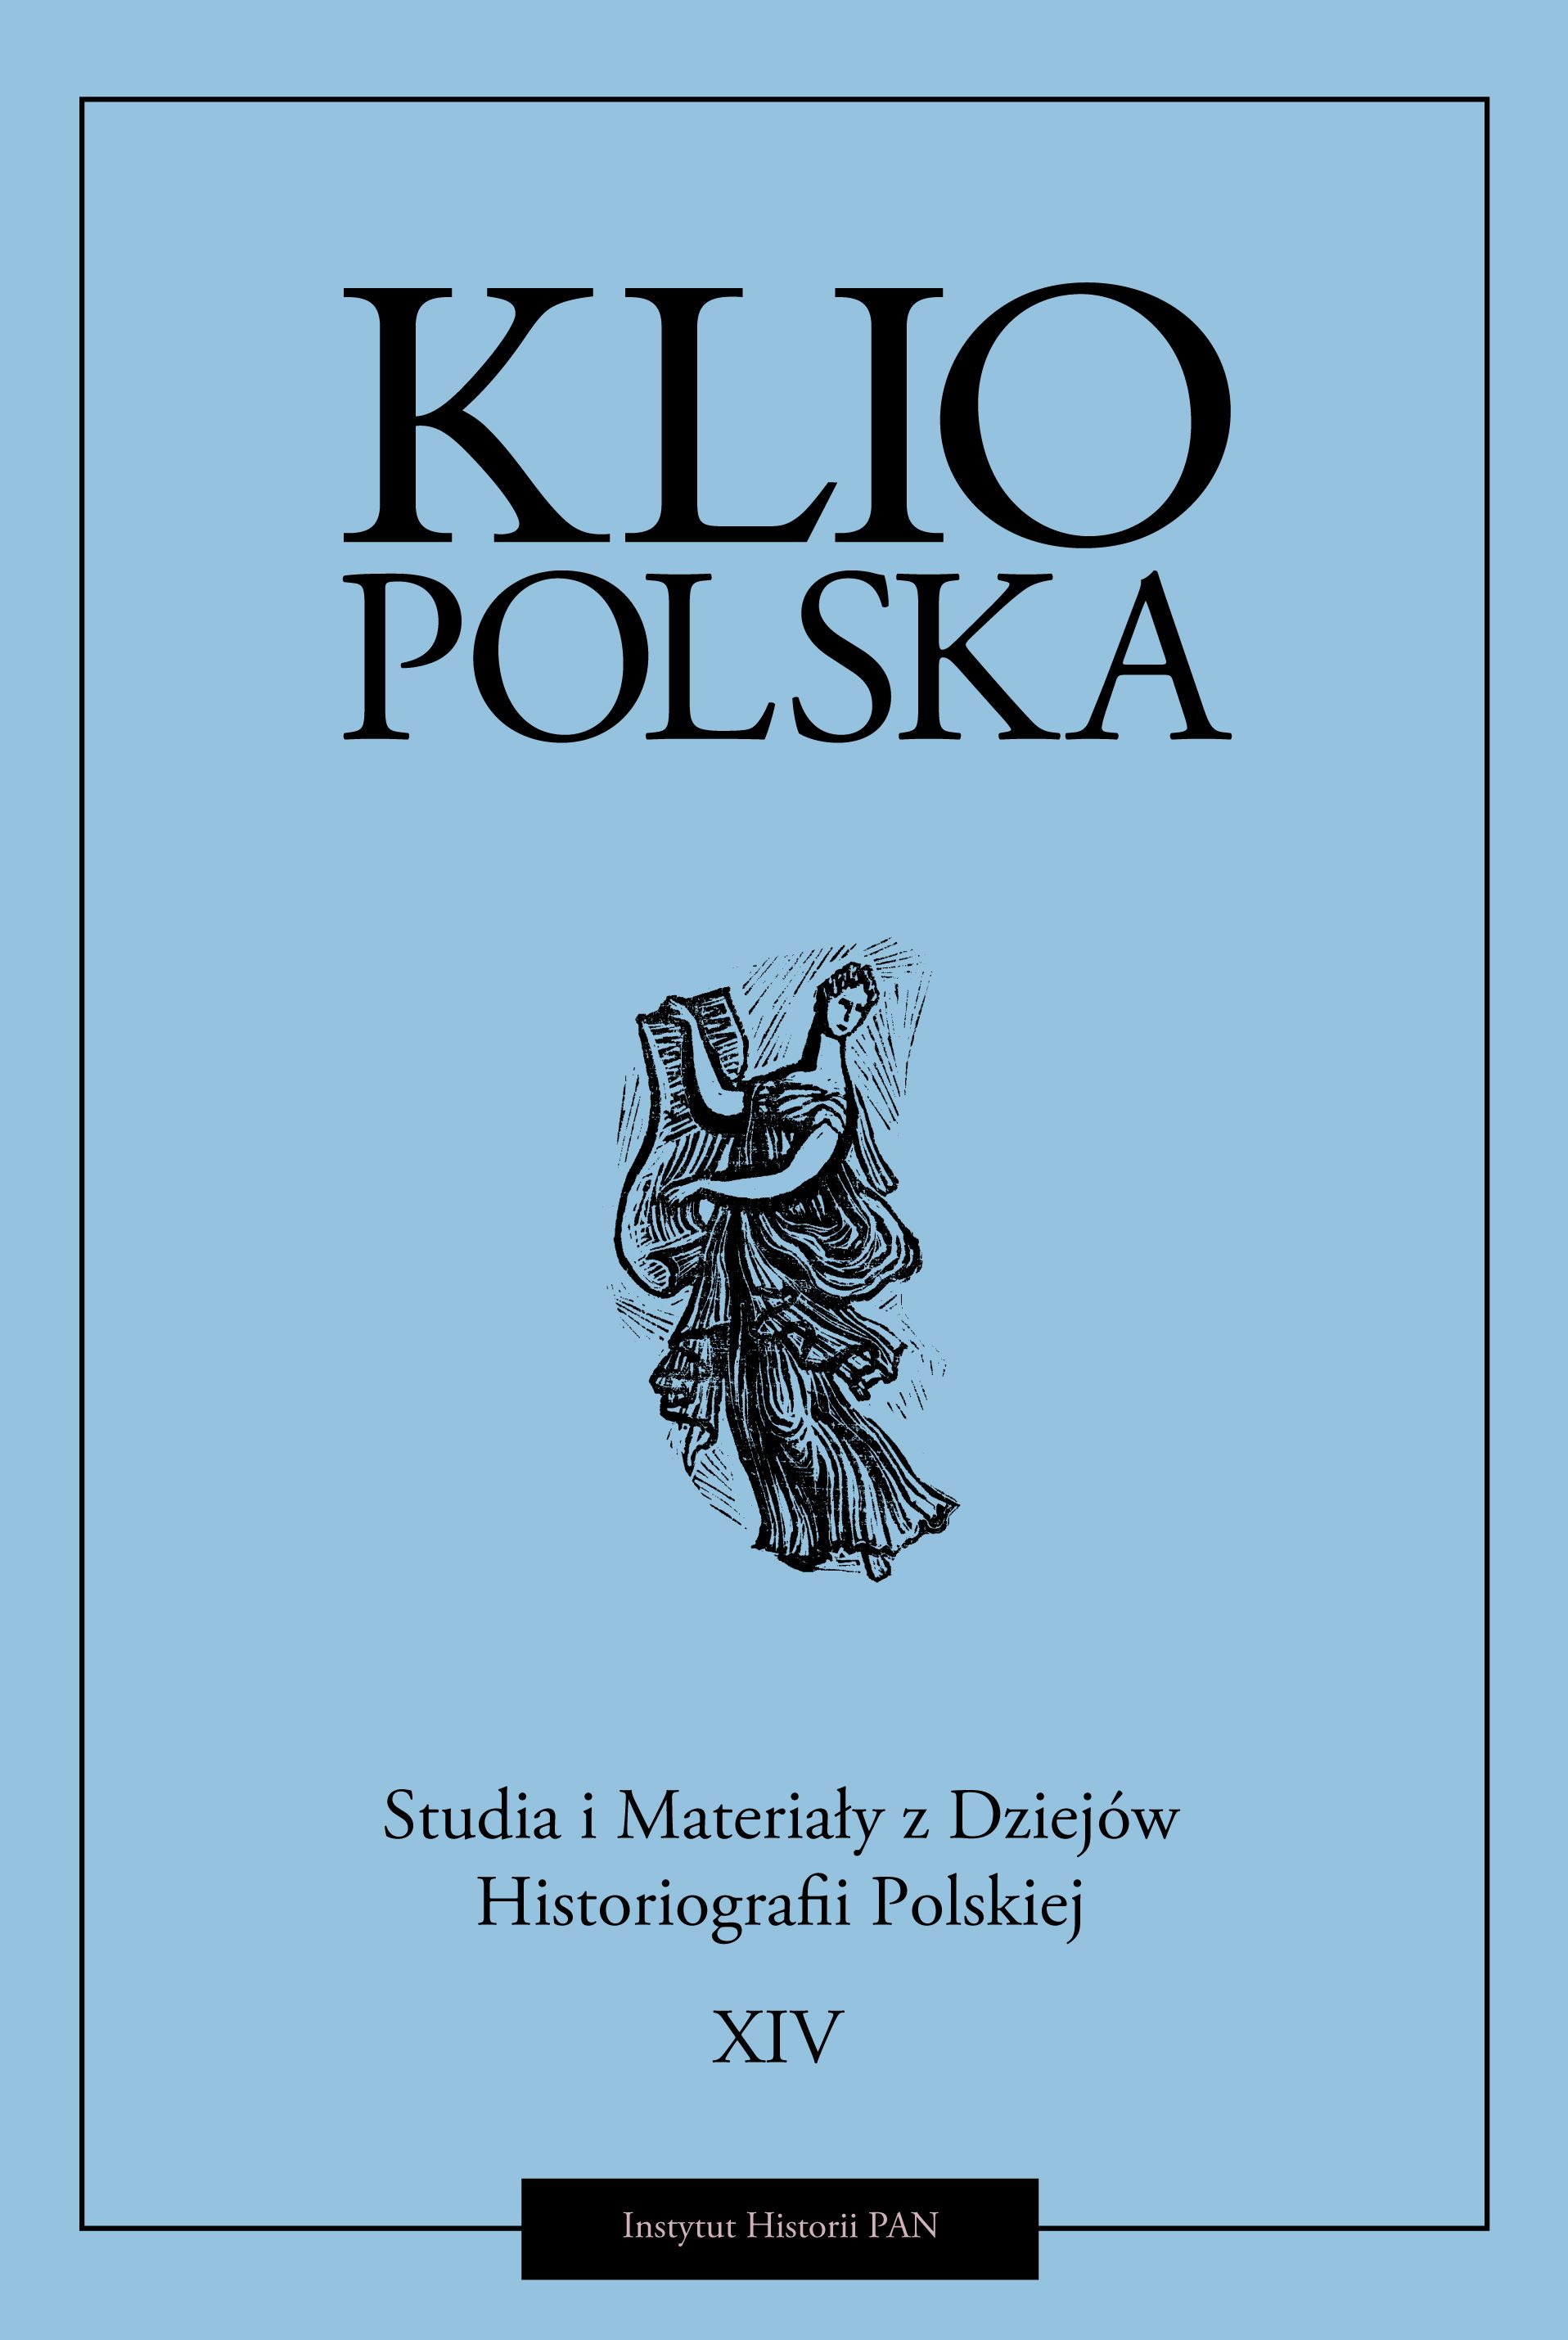 Okładka czasopisma "Klio Polska" Tom XIV